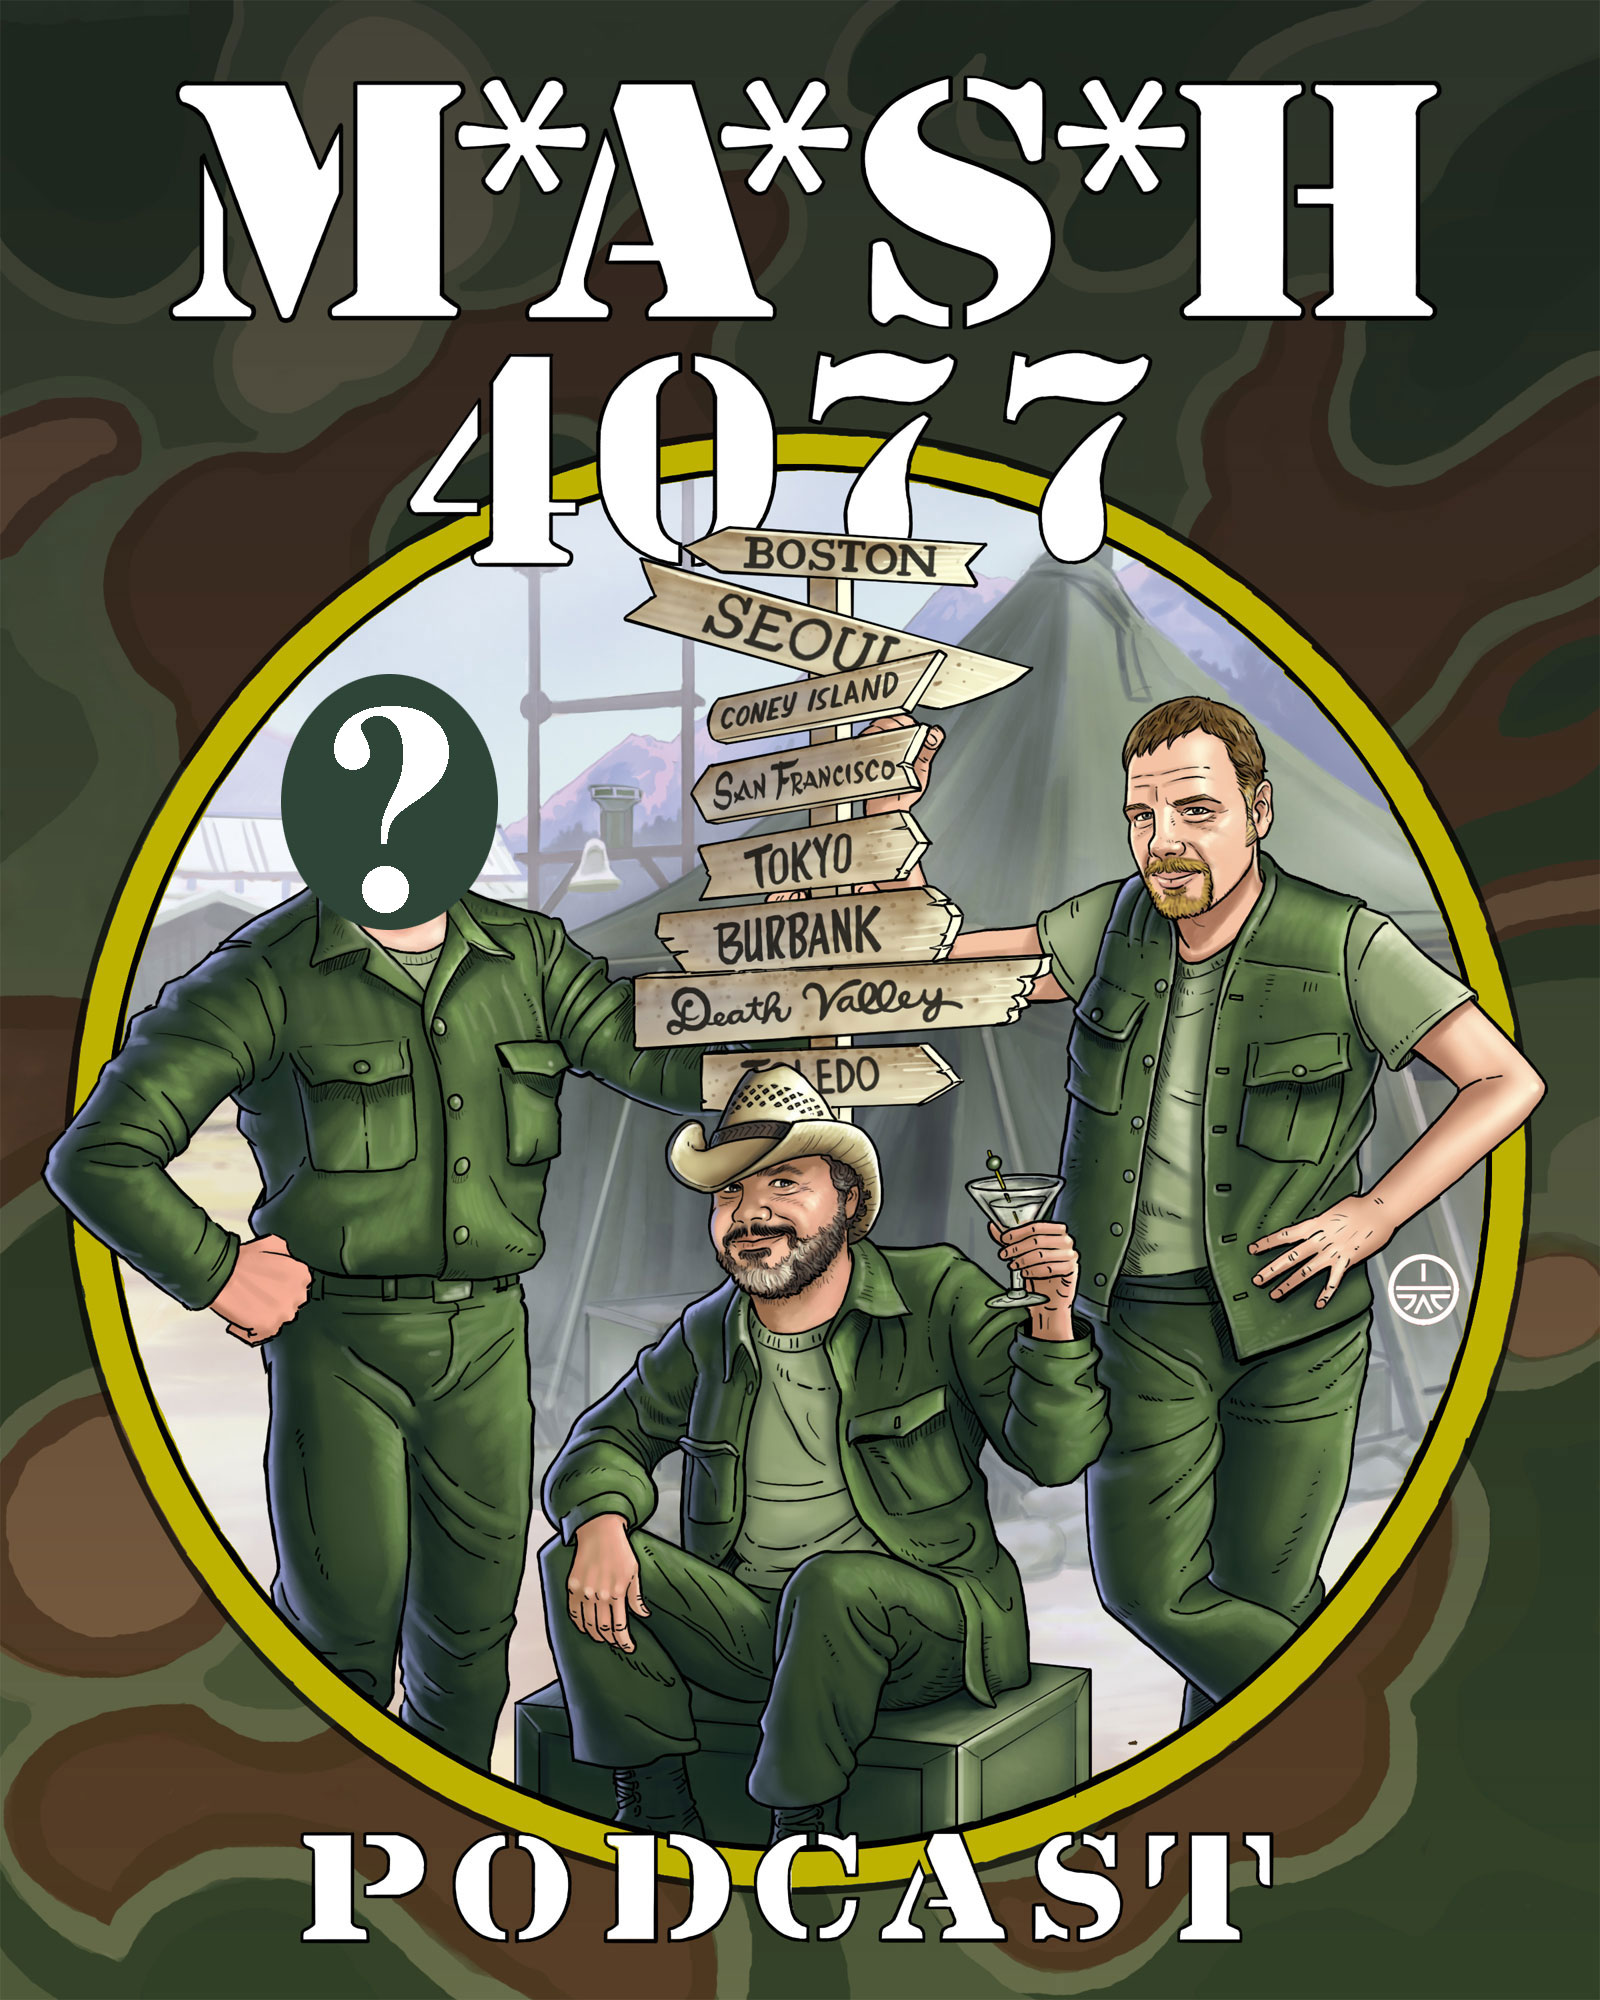 MASH 4077 Podcast Episode 130